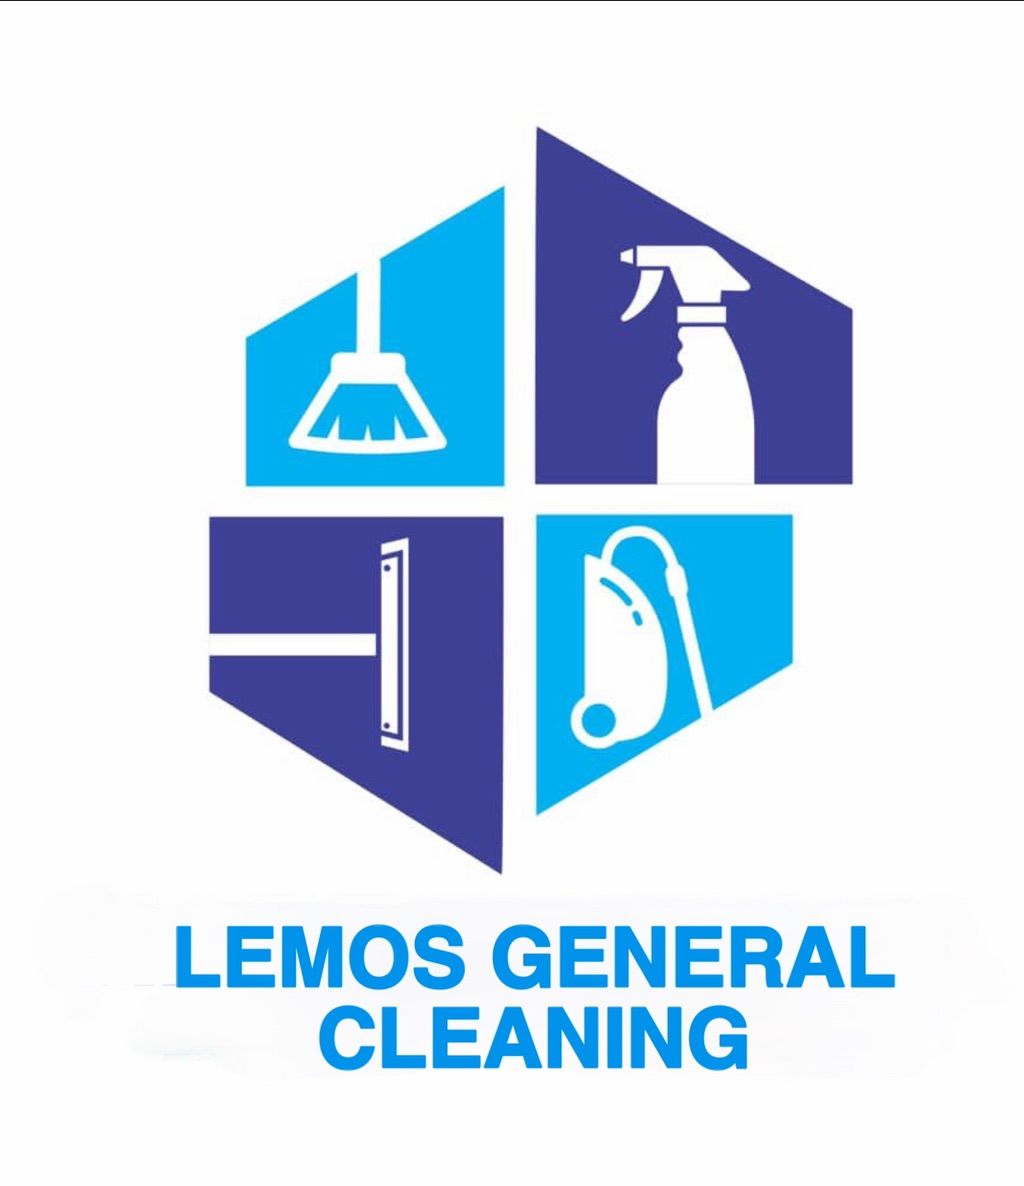 Lemos General Cleaning